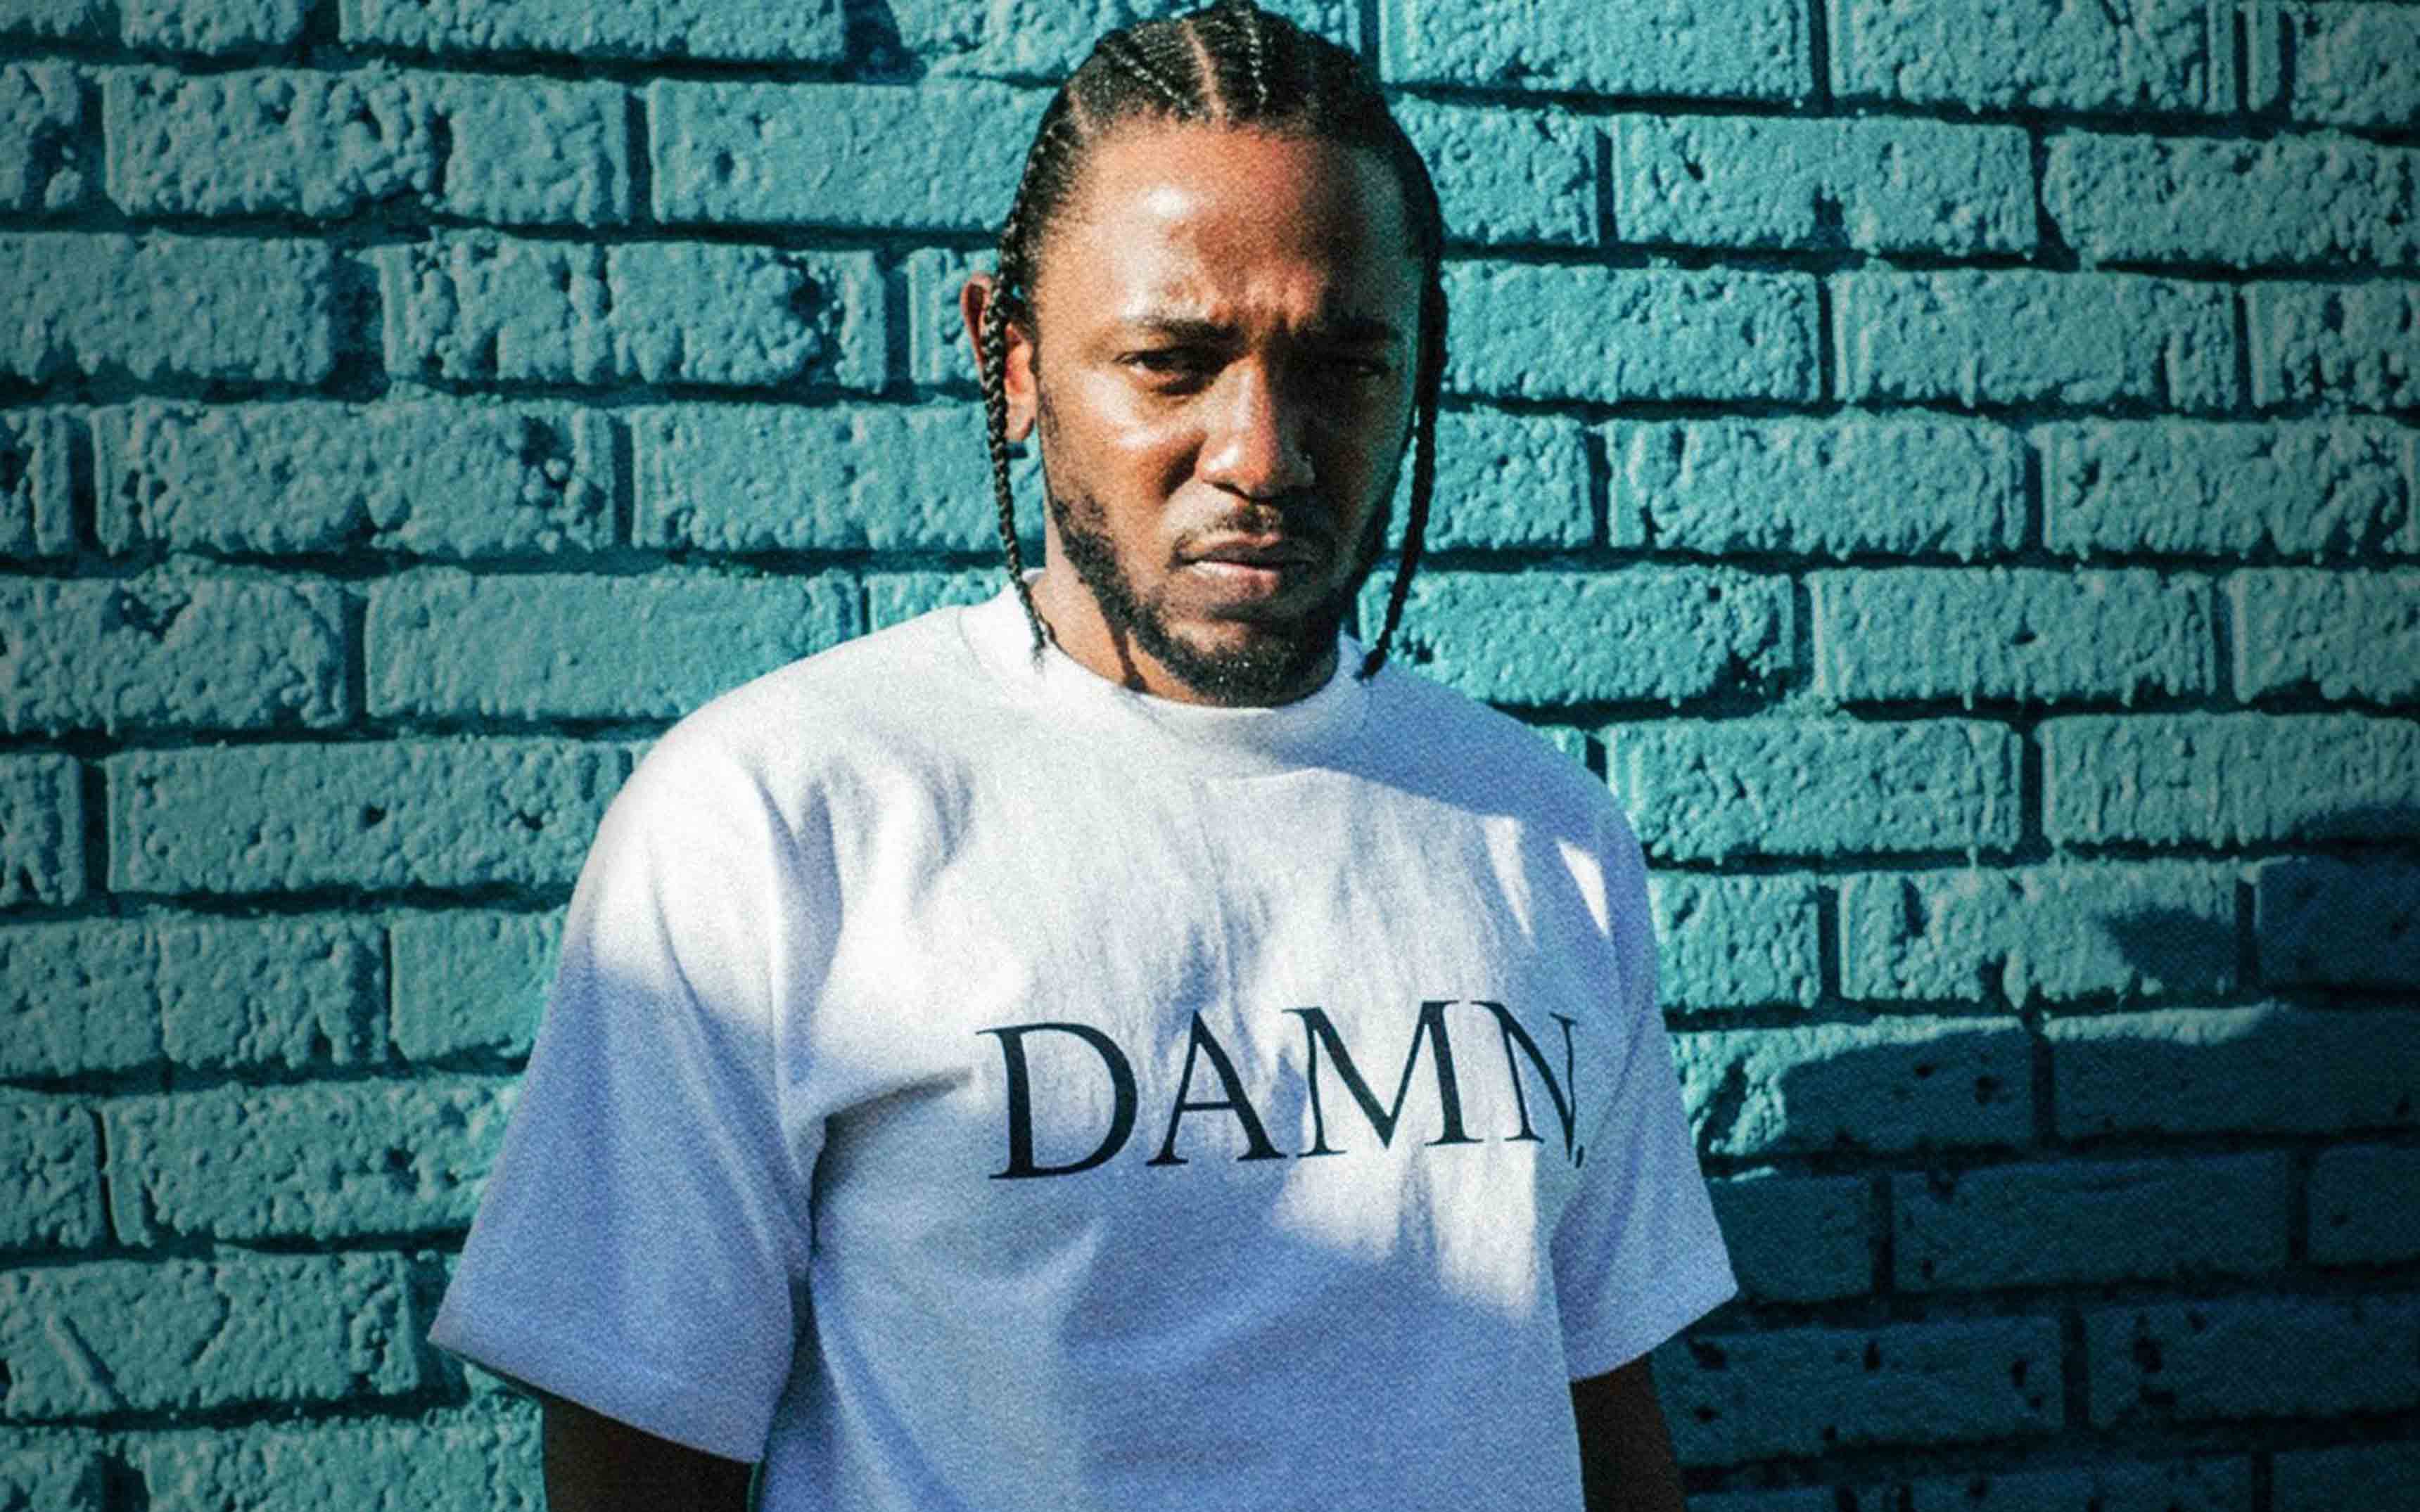 La biografía oficial de Kendrick Lamar se publicará este mes de octubre